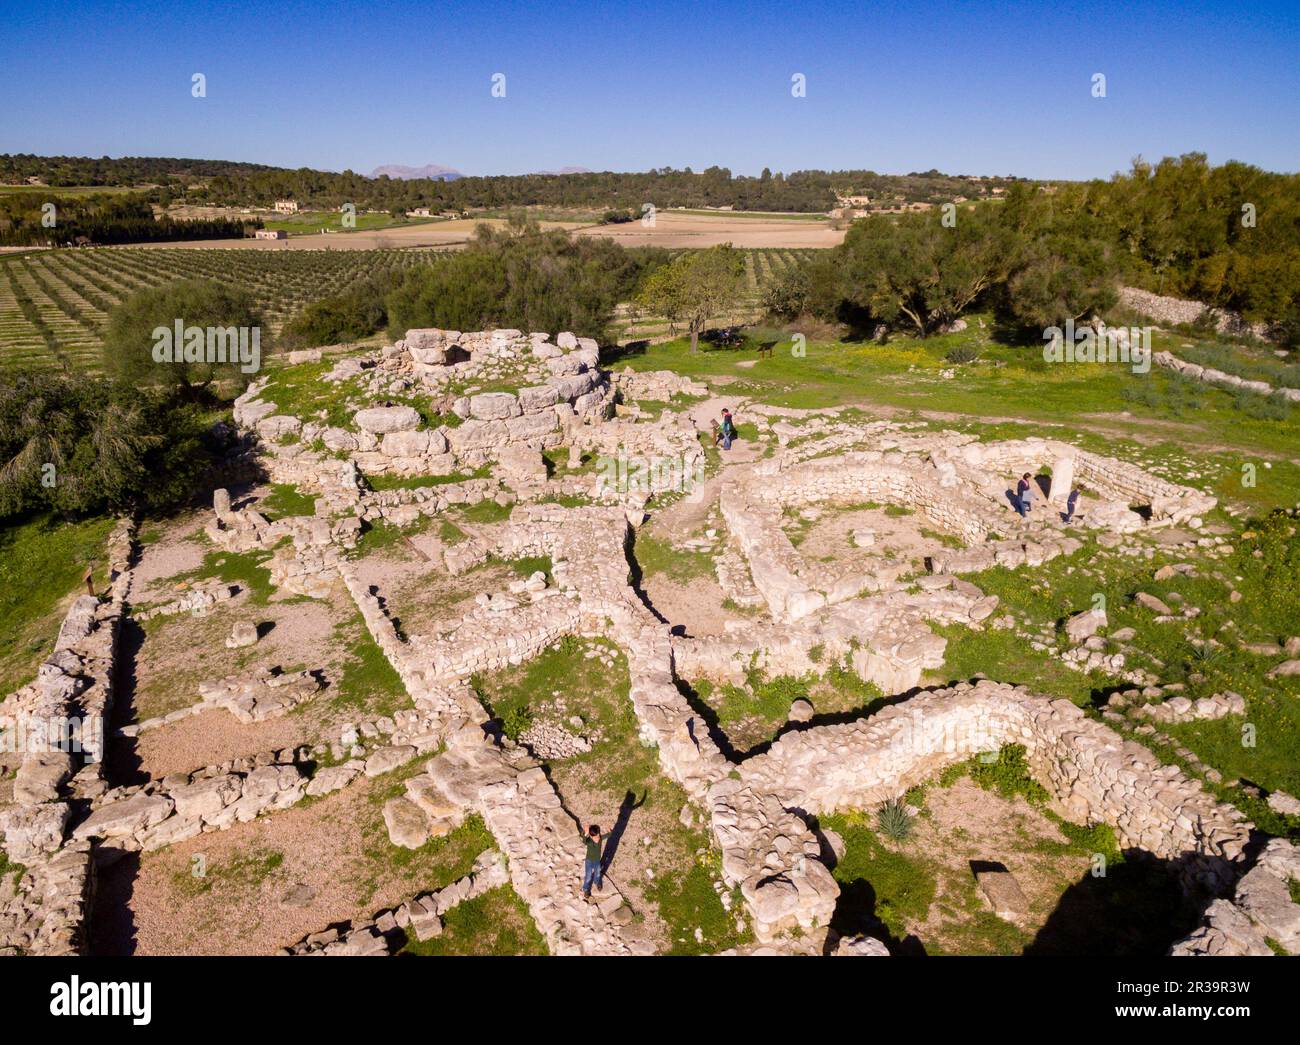 Figlio Fornés, sito archeologico di epoca preistorica, costruito nel periodo talaiotico, decimo secolo BC, Montuiri, Maiorca, isole Baleari, Spagna. Foto Stock